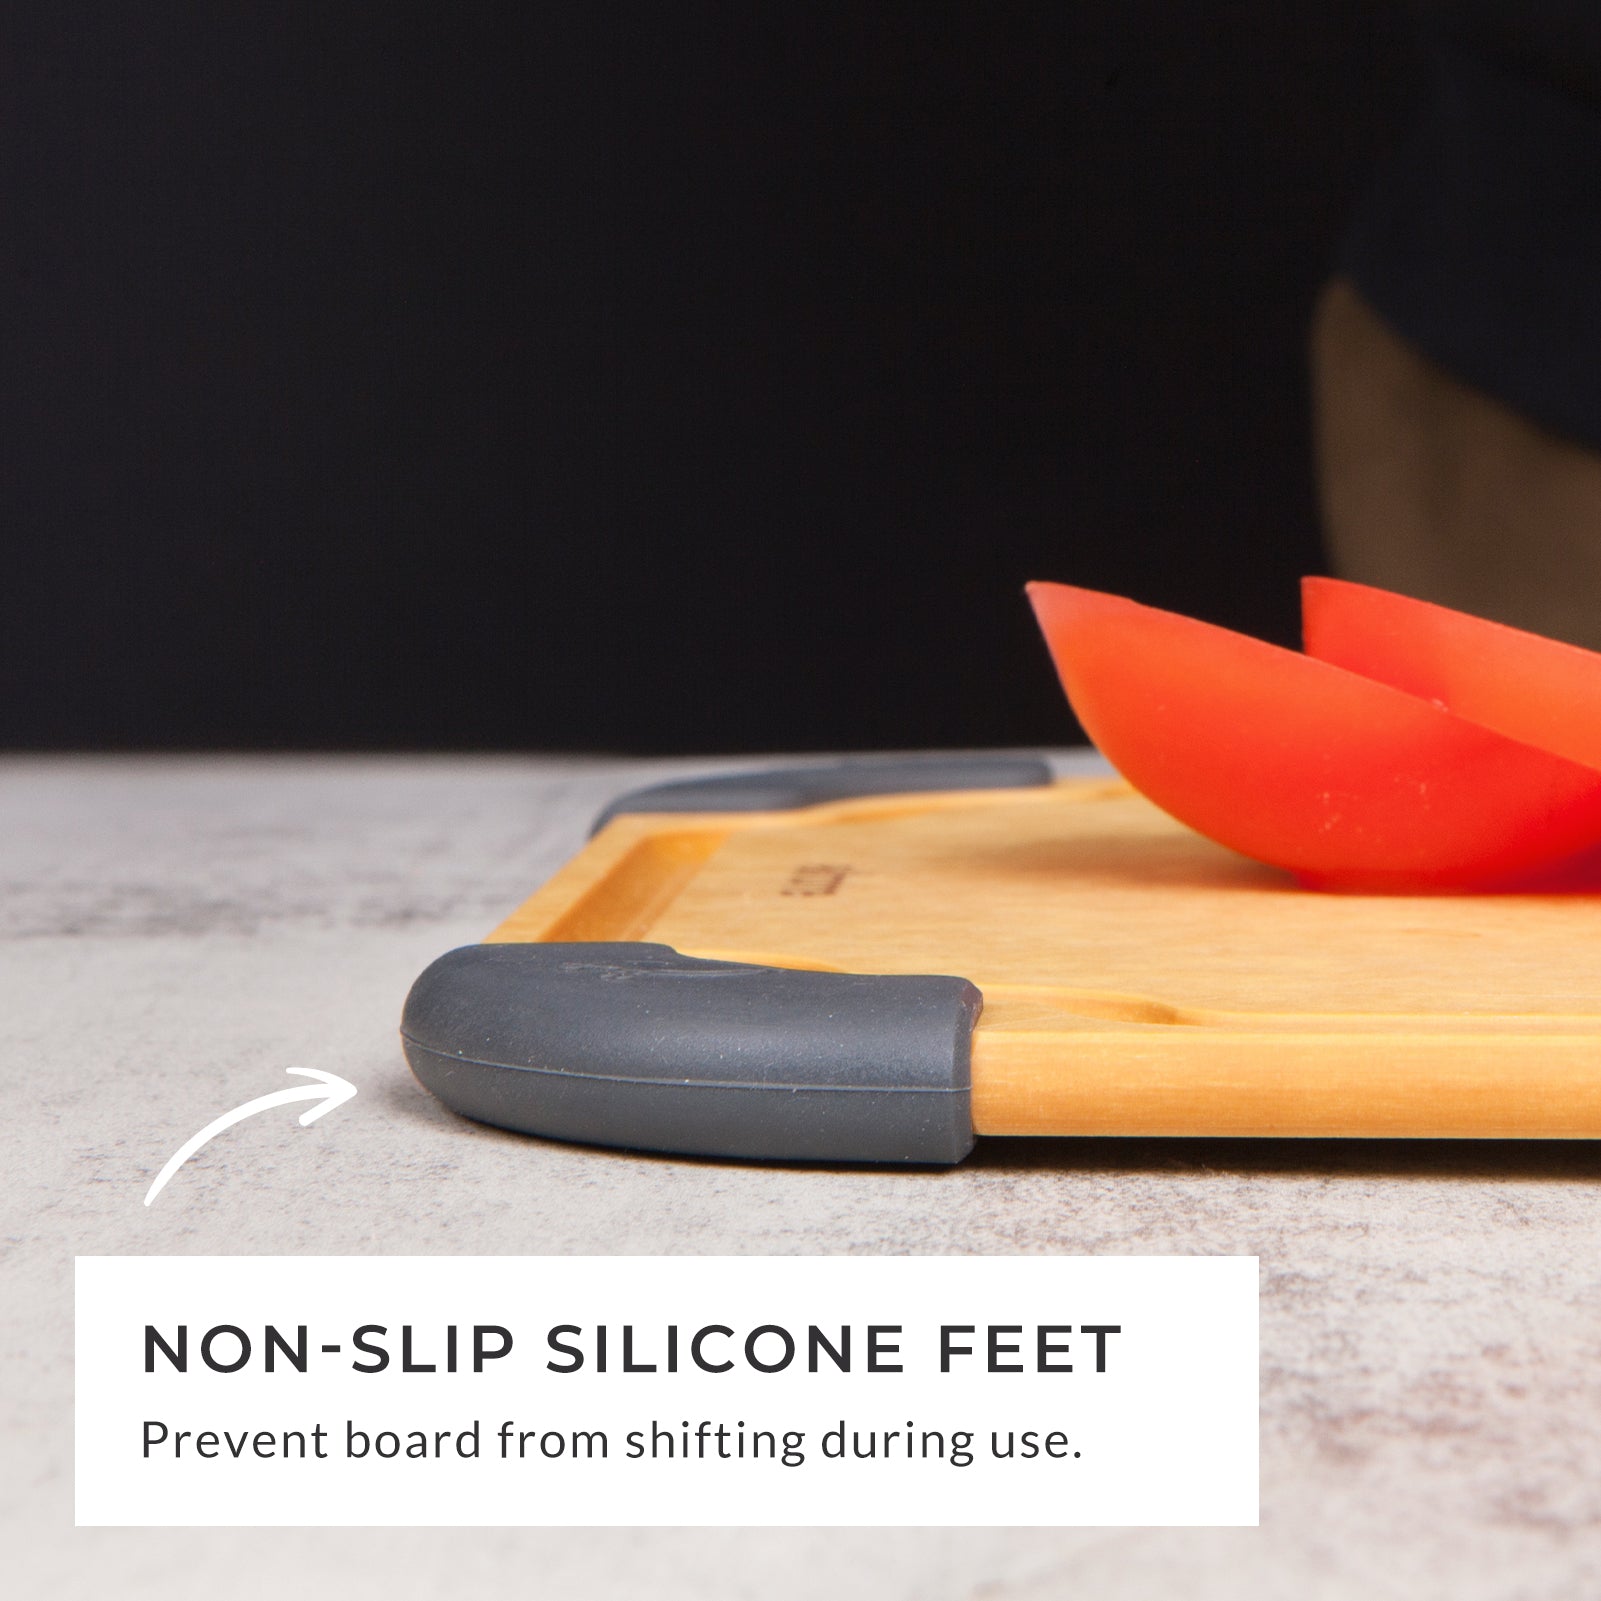 Reversible Cutting Board | Small Cutting Board | Elihome